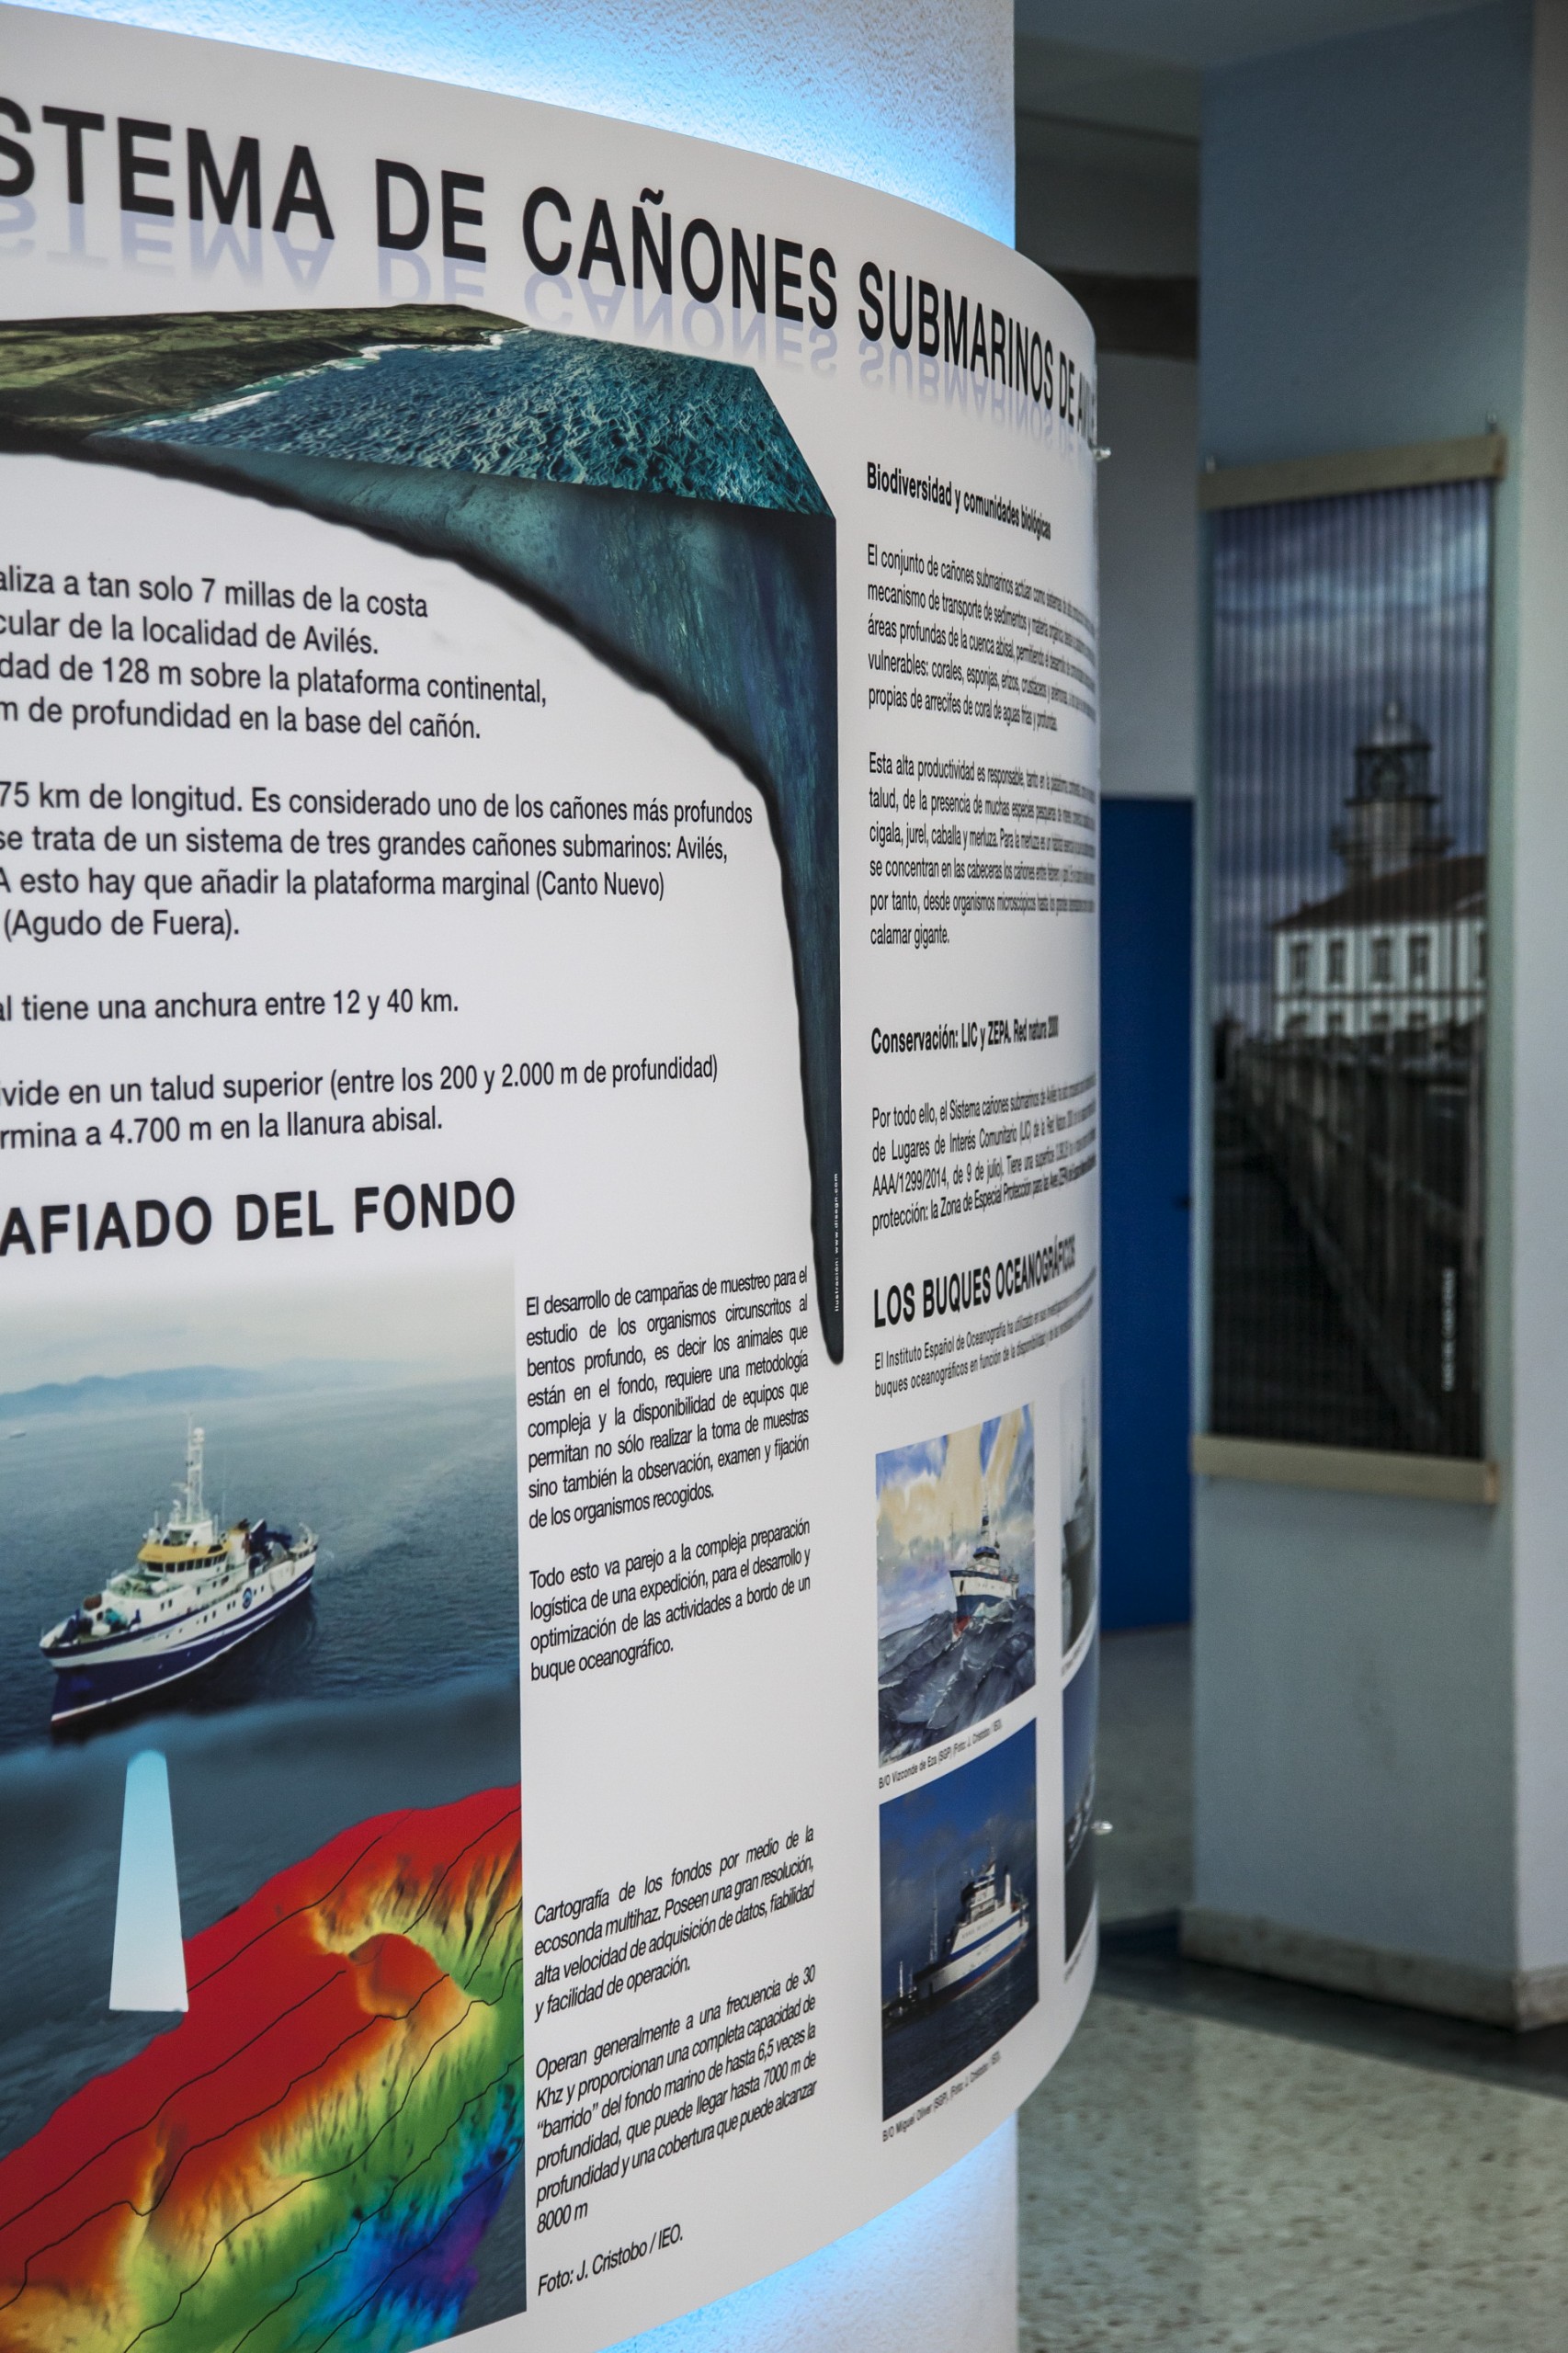 Dirección General de Pesca del Principado de Asturias. Exposición, diseño gráfico, trampantojo y producción sobre el Cañón de Avilés 2016.